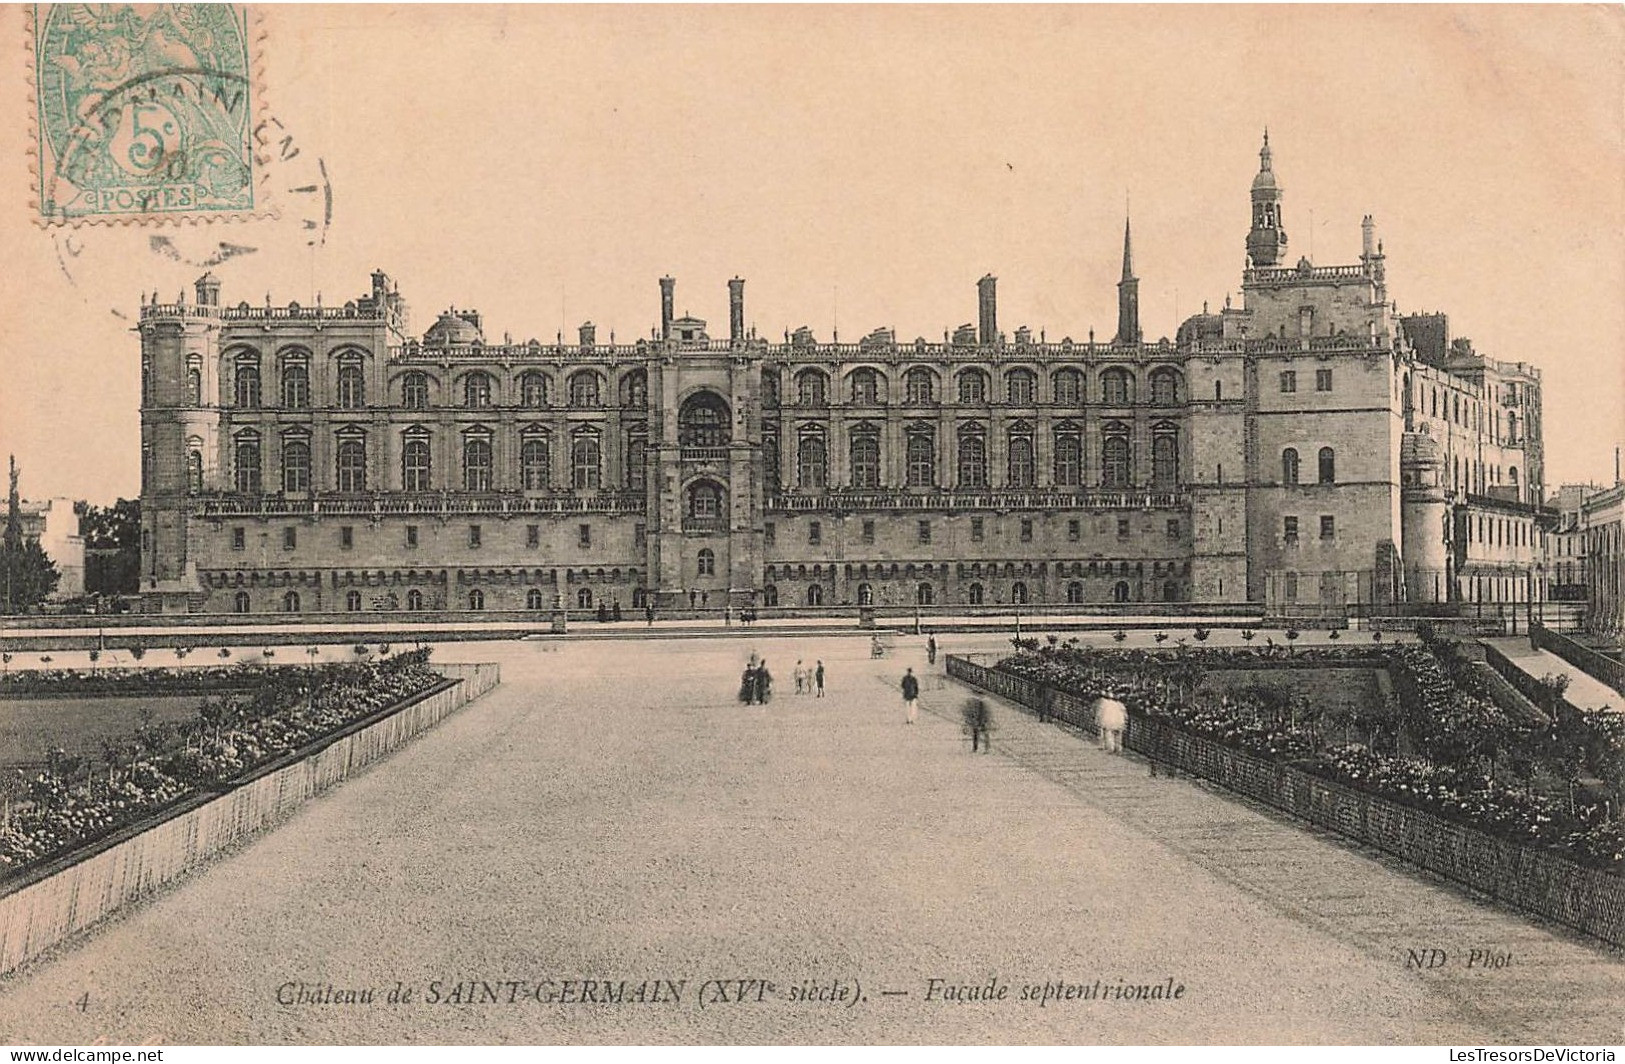 FRANCE - Château De Saint Germain (XVIè Siècle) - Façade Septentoriale - Animé - Carte Postale Ancienne - St. Germain En Laye (Château)